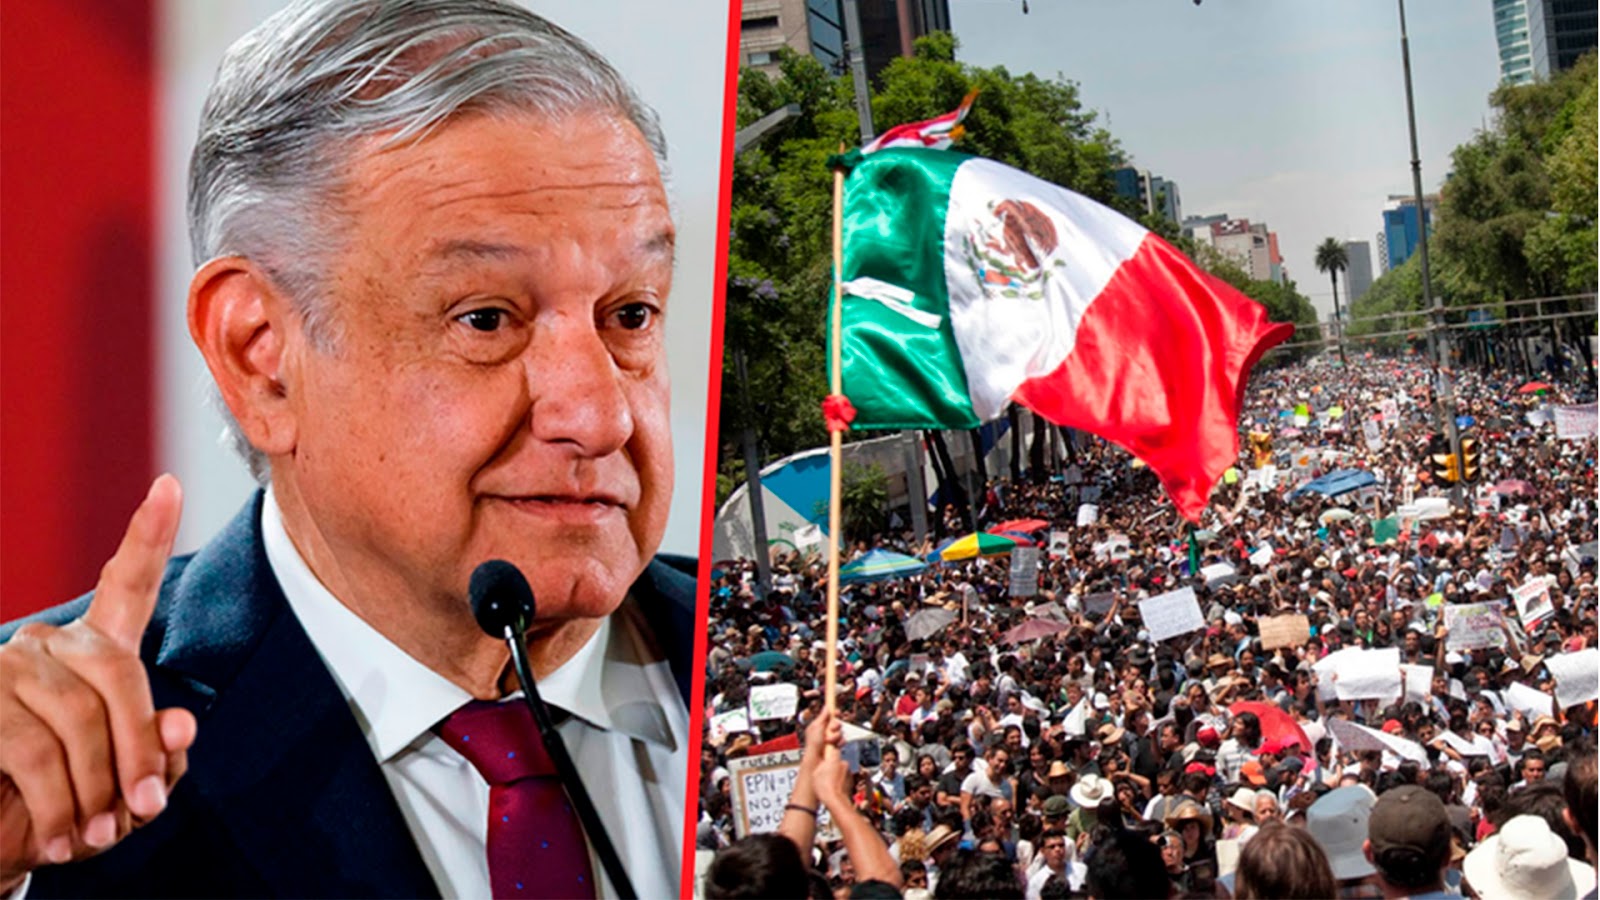 Mexicanos dispuestos a defender a AMLO con "sangre" de posible intento de golpe de estado